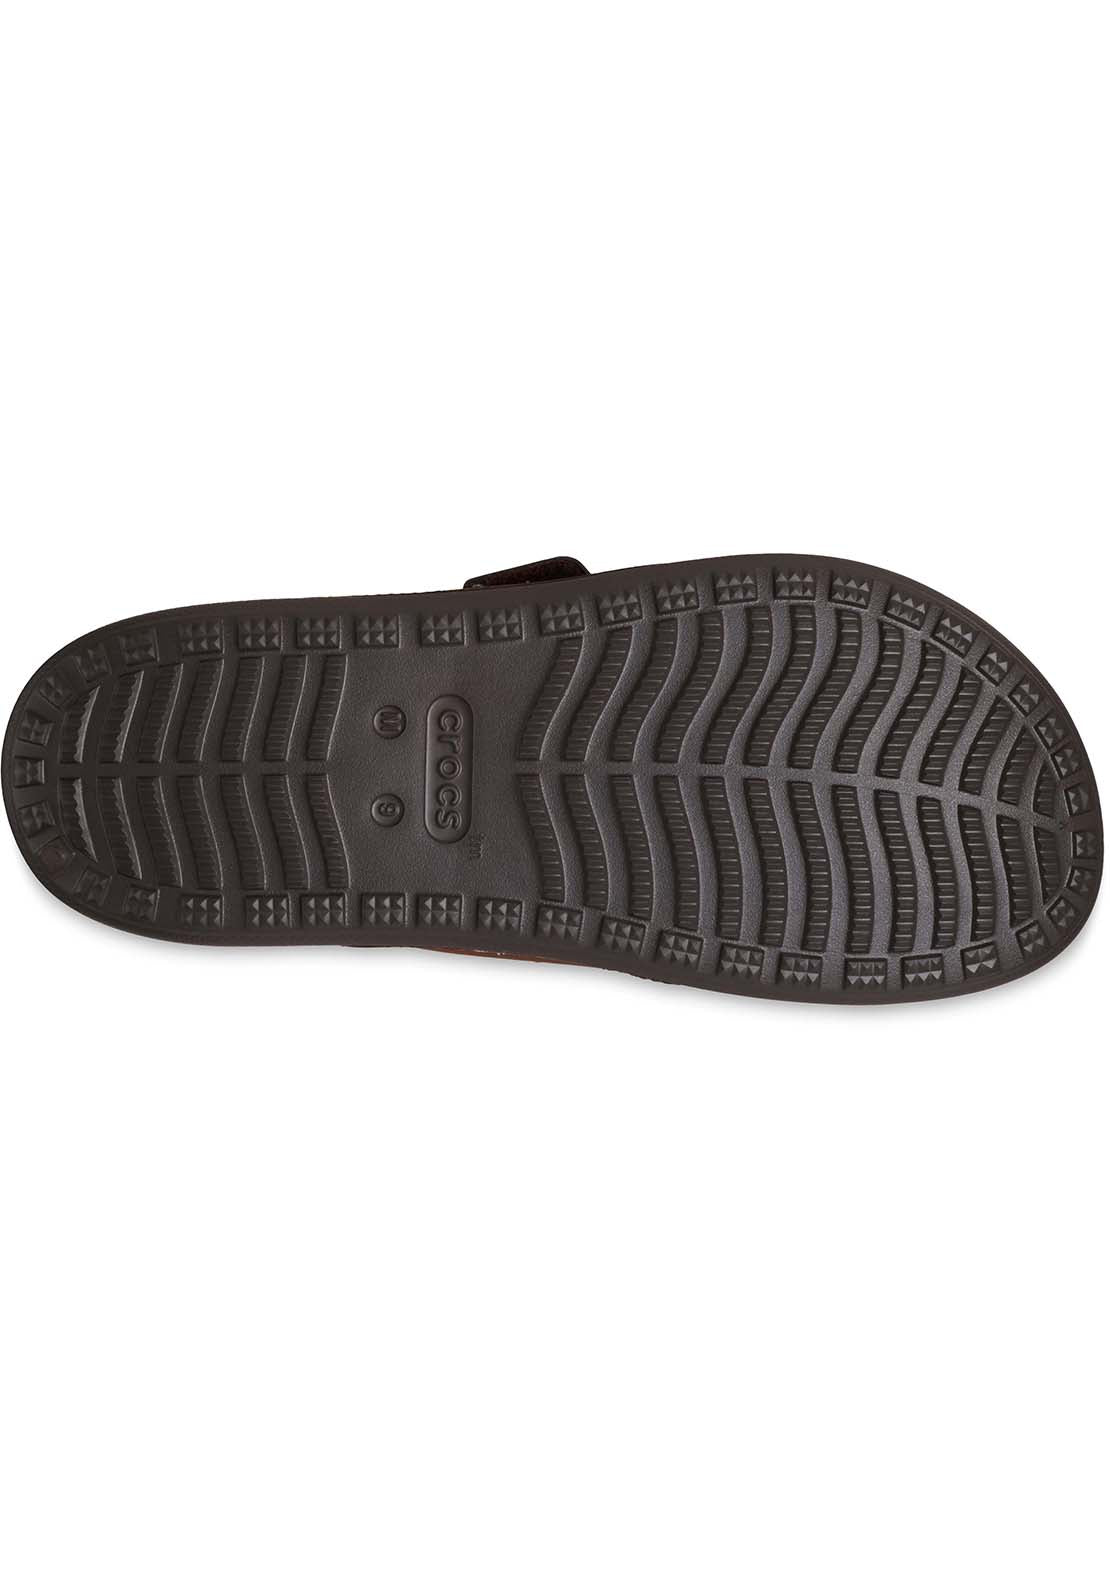 Crocs Yukon Vista II Sandal 4 Shaws Department Stores